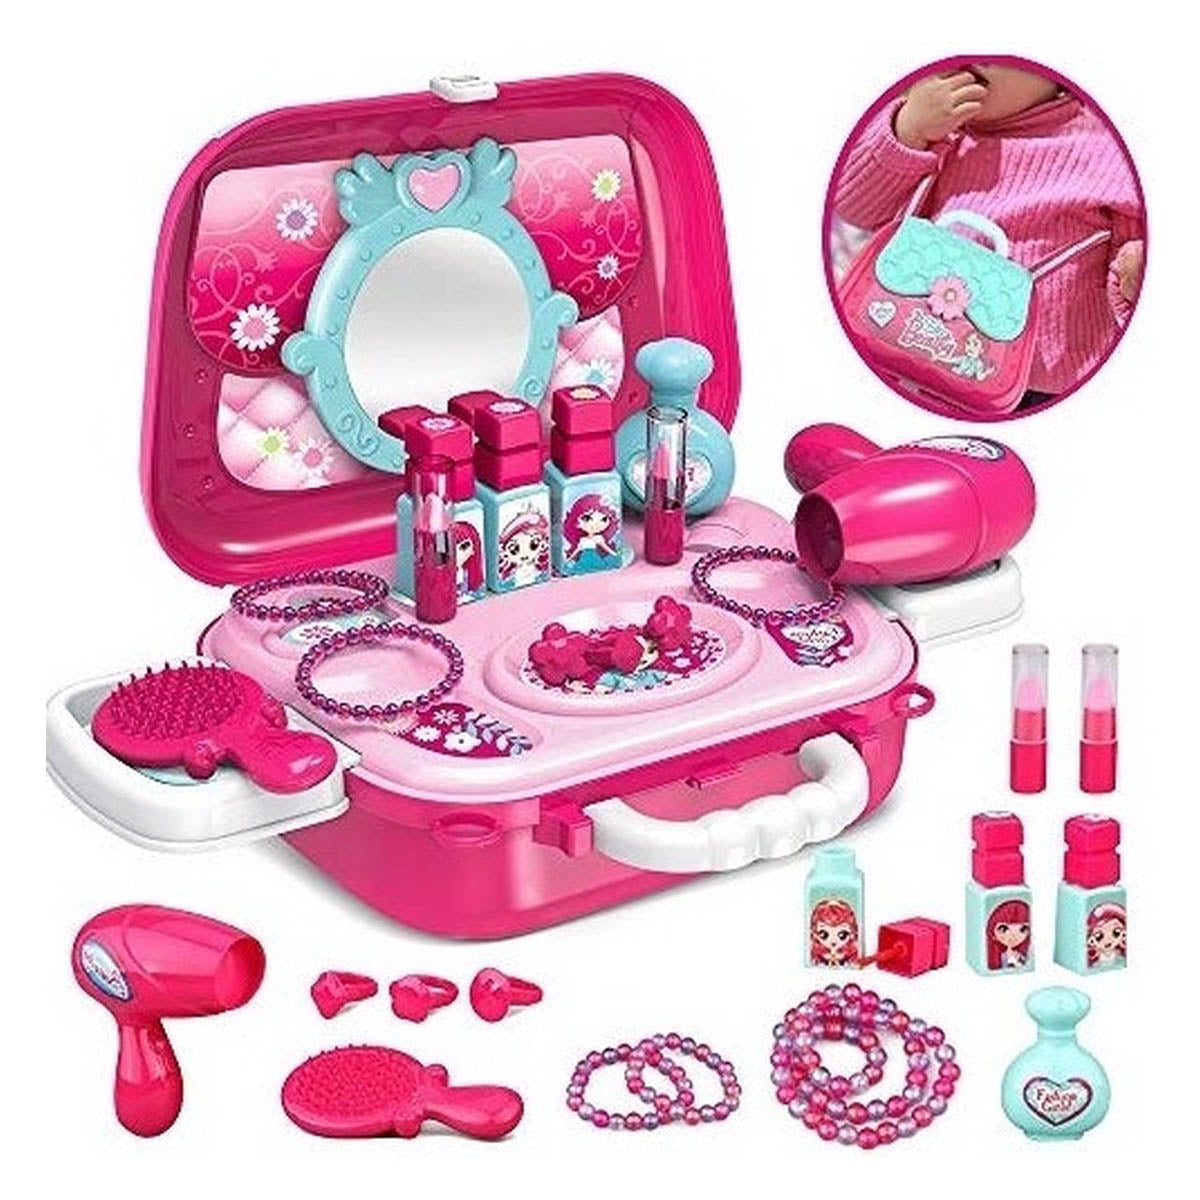 Ariko Trousse de maquillage pour enfants - Portable - Rose - Stylist Toys